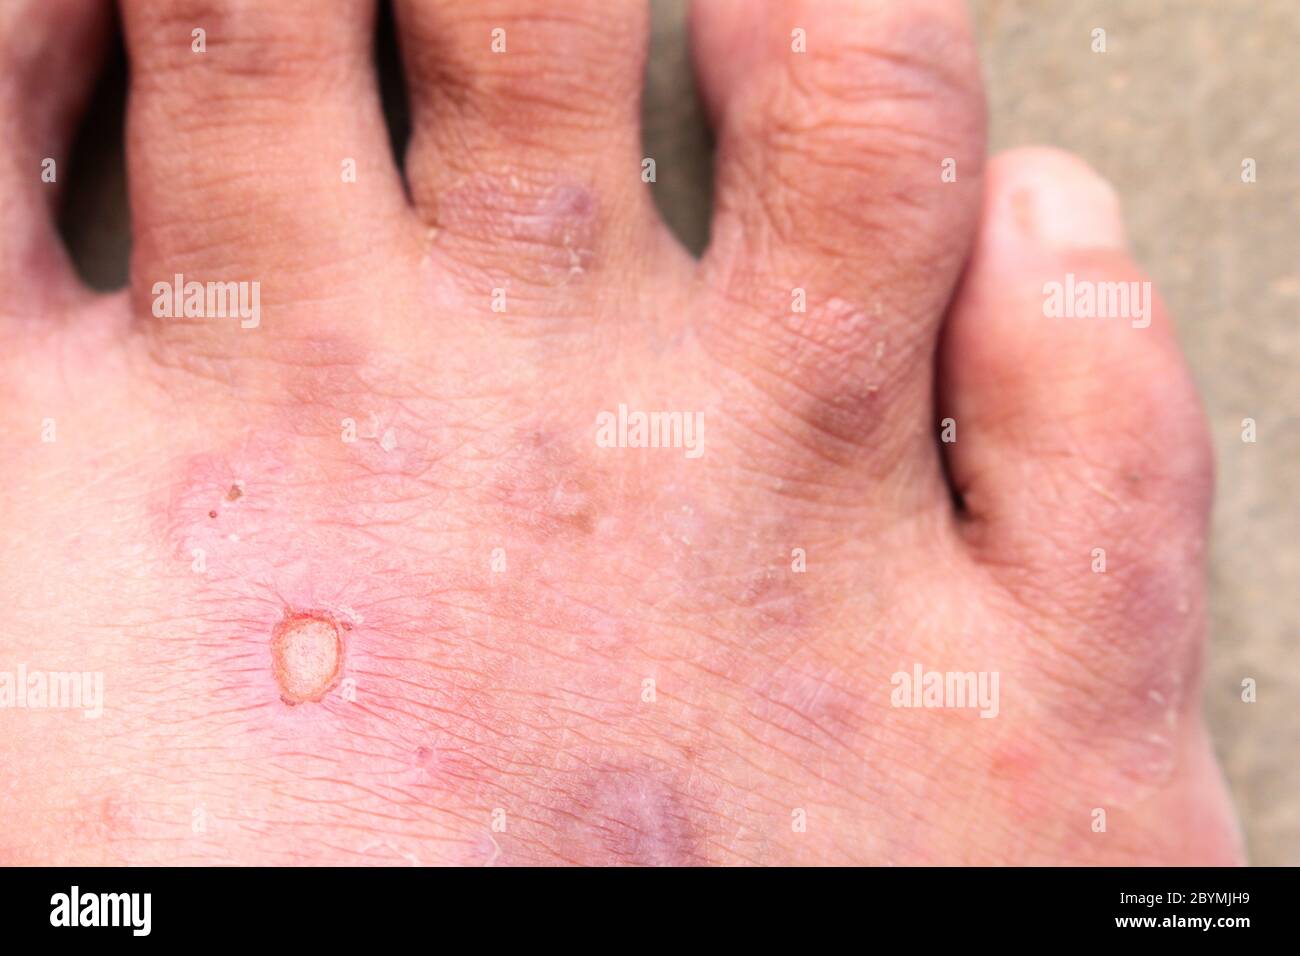 gros plan peau psoriasis des pieds de l'athlète champignon, pied ...